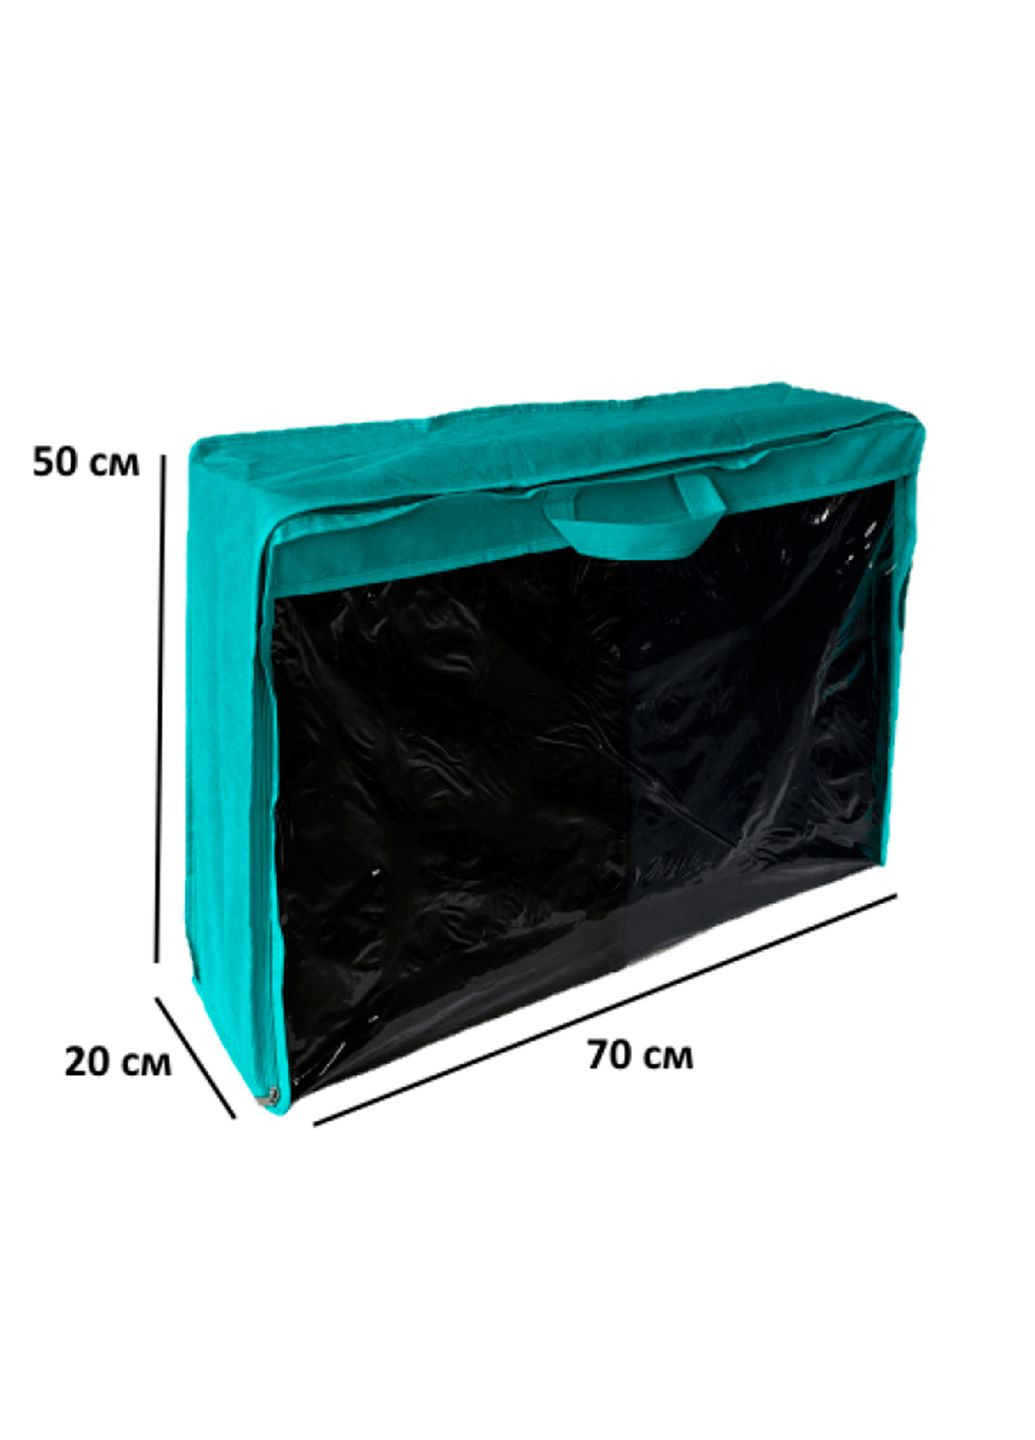 Чехол-сумка для хранения вещей, одеял, подушек L 70х50х20 см с ручкой Organize (291018698)